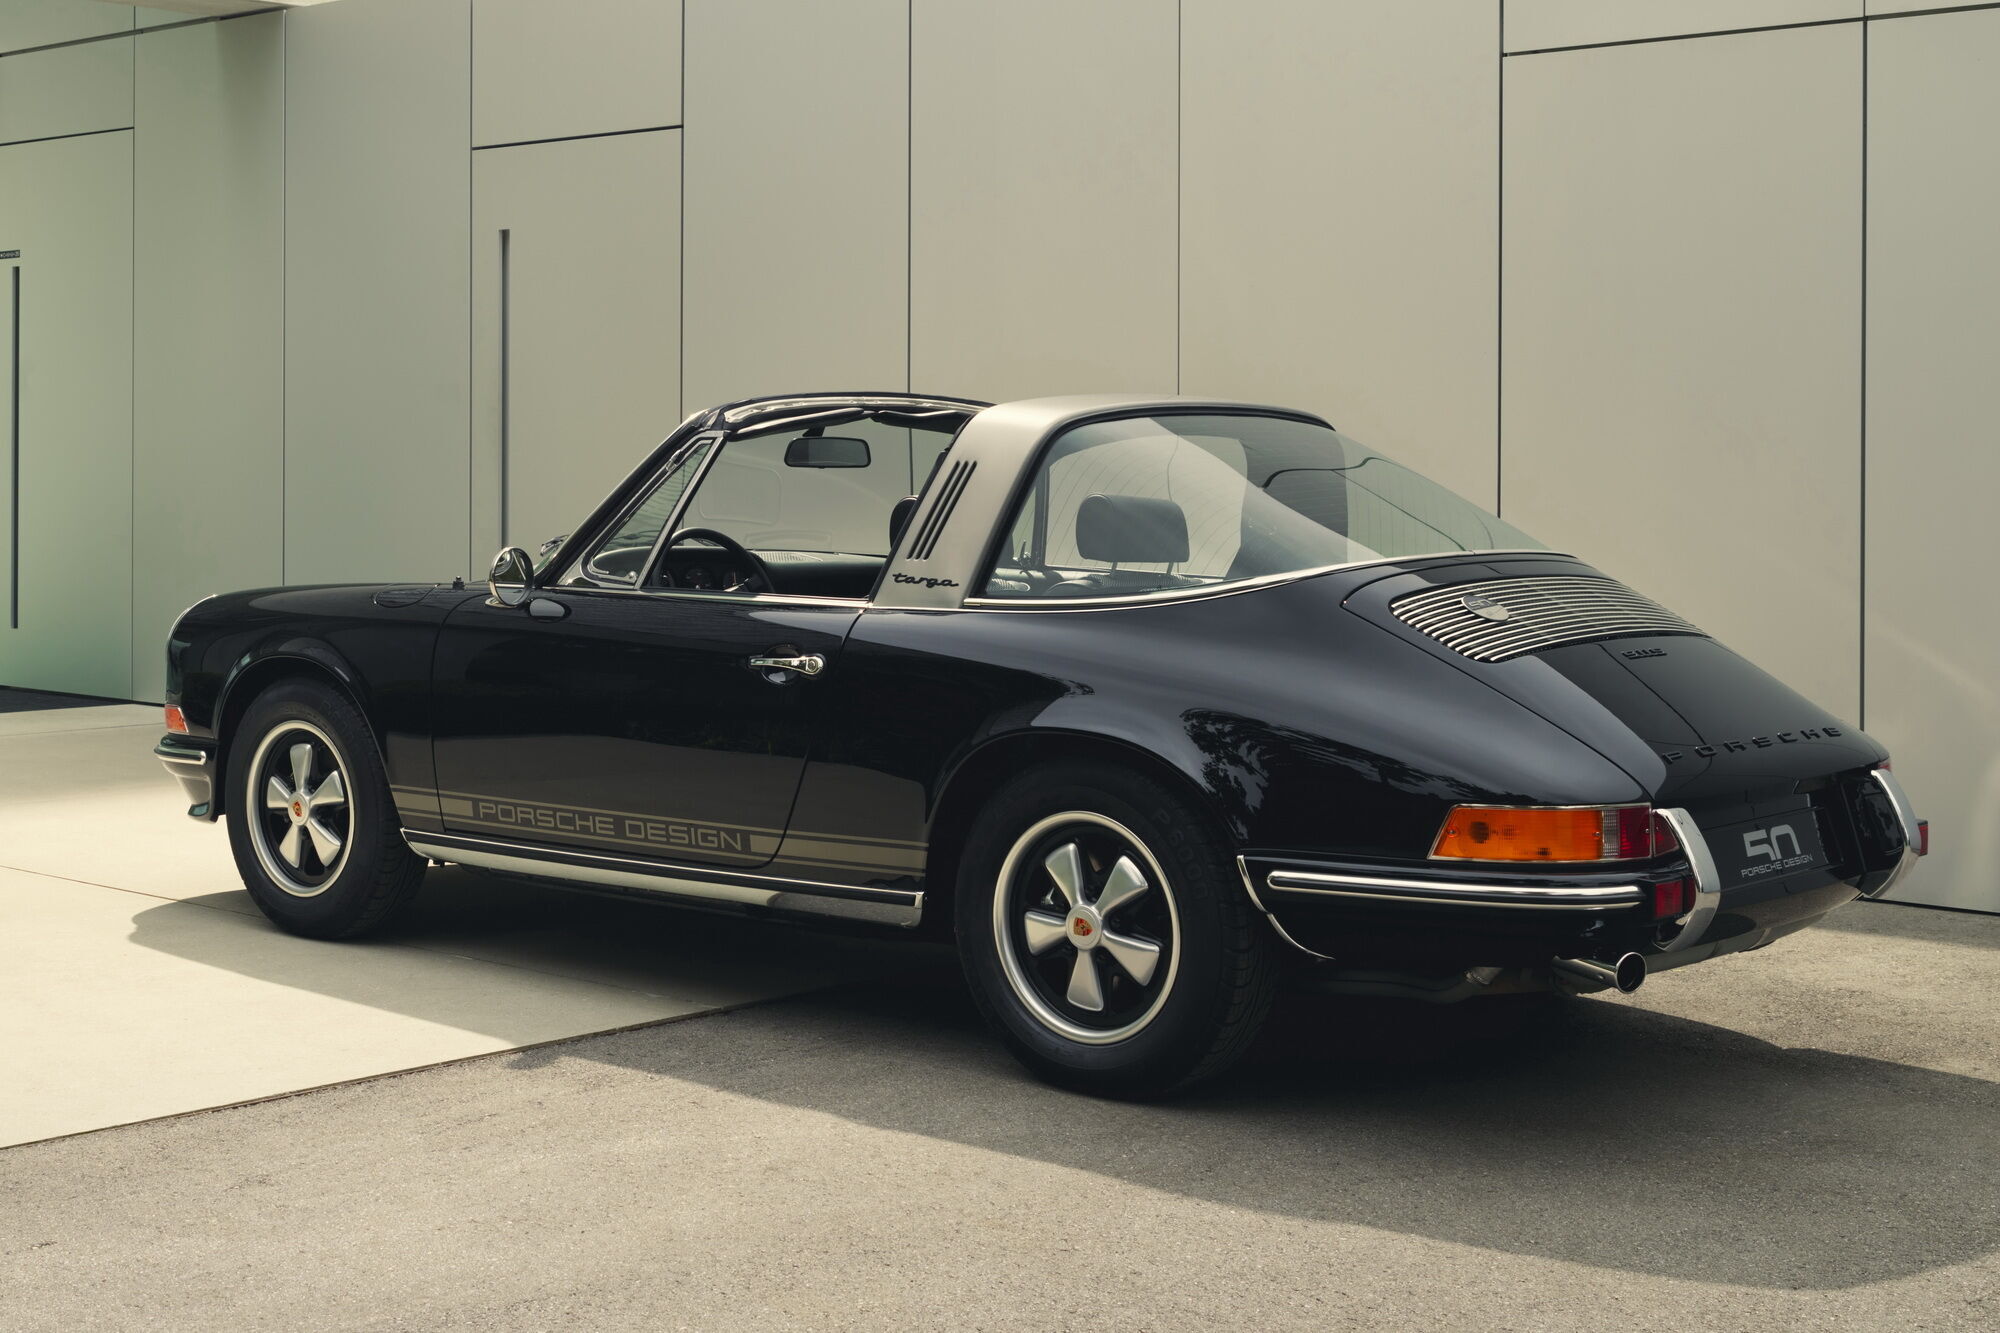 Автомобіль пофарбували у чорний колір, а бічні панелі кузова прикрасили смугами платинового кольору та написом Porsche Design